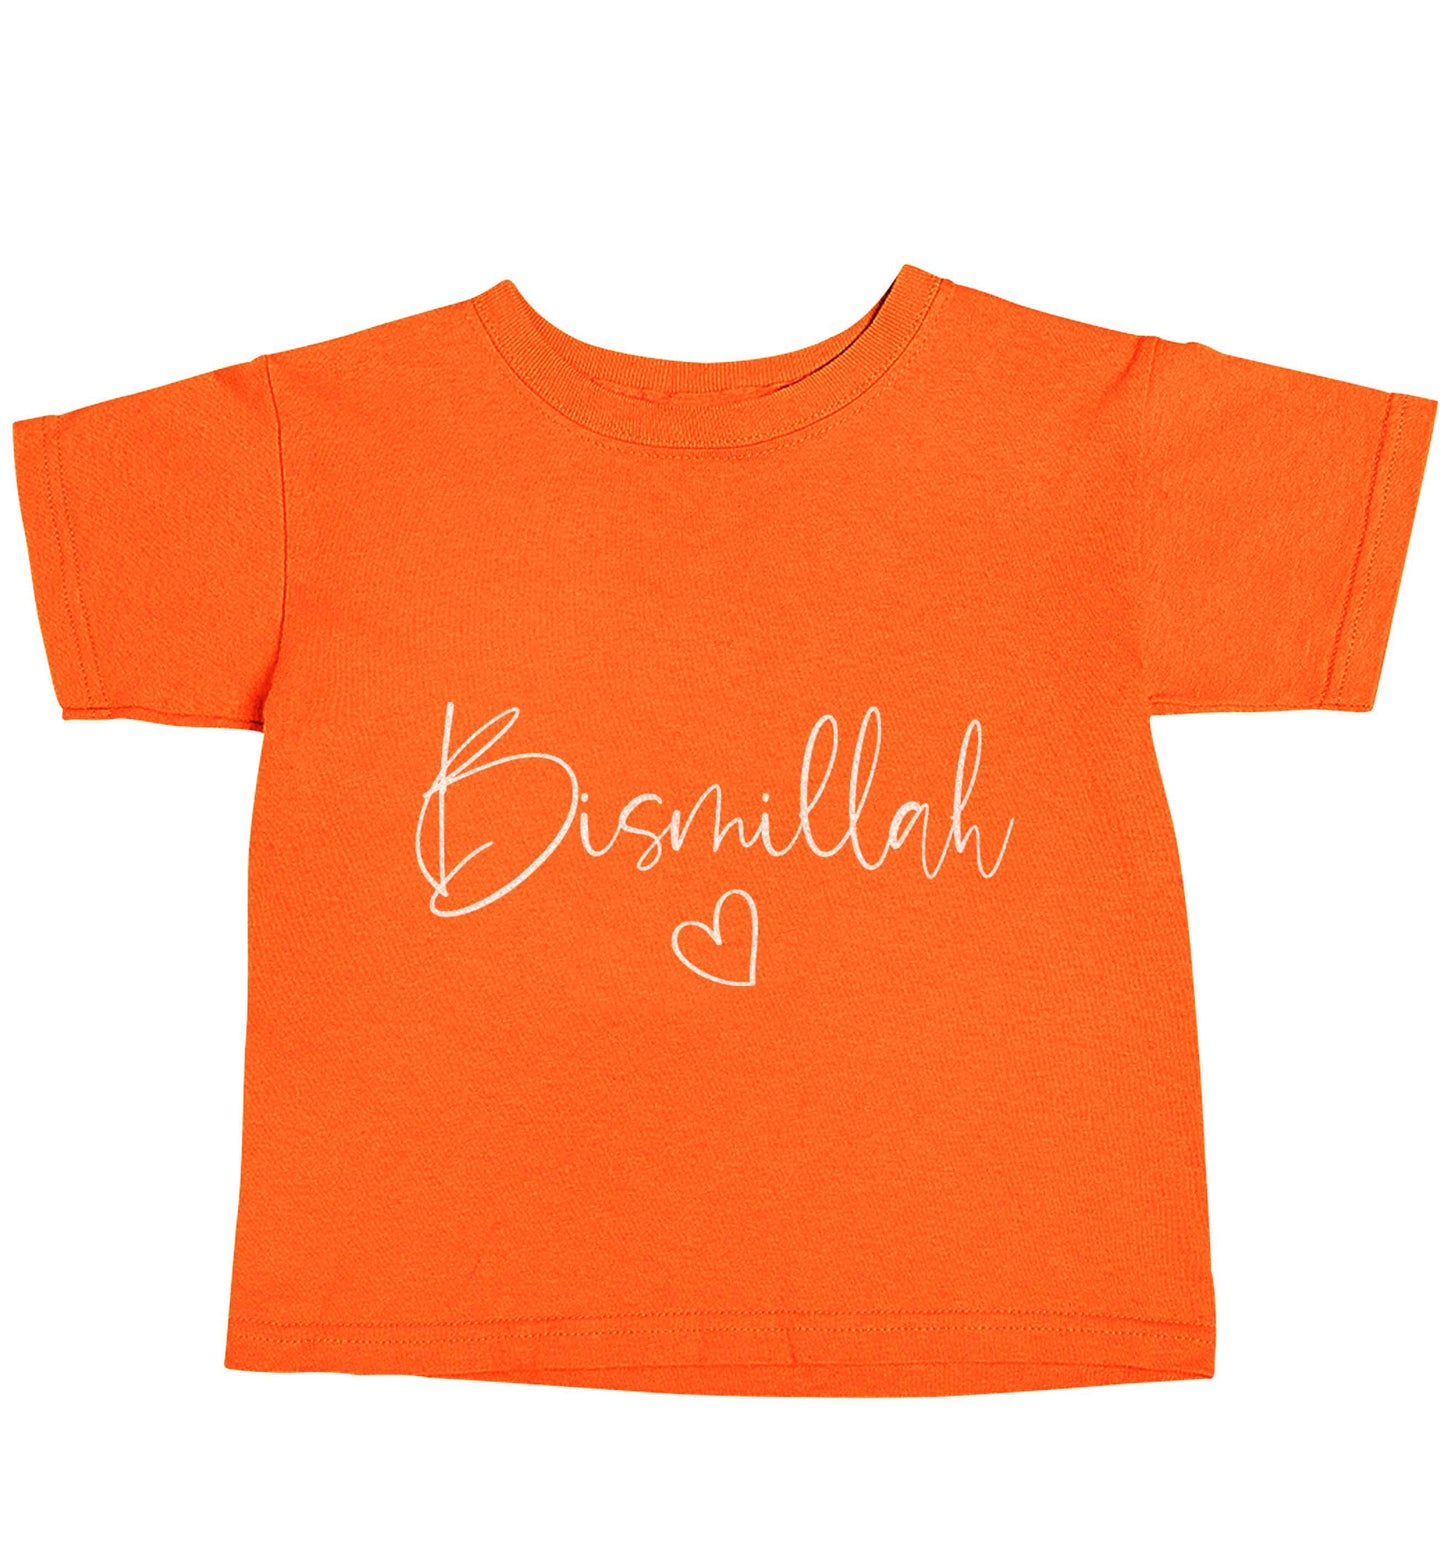 Bismillah orange baby toddler Tshirt 2 Years